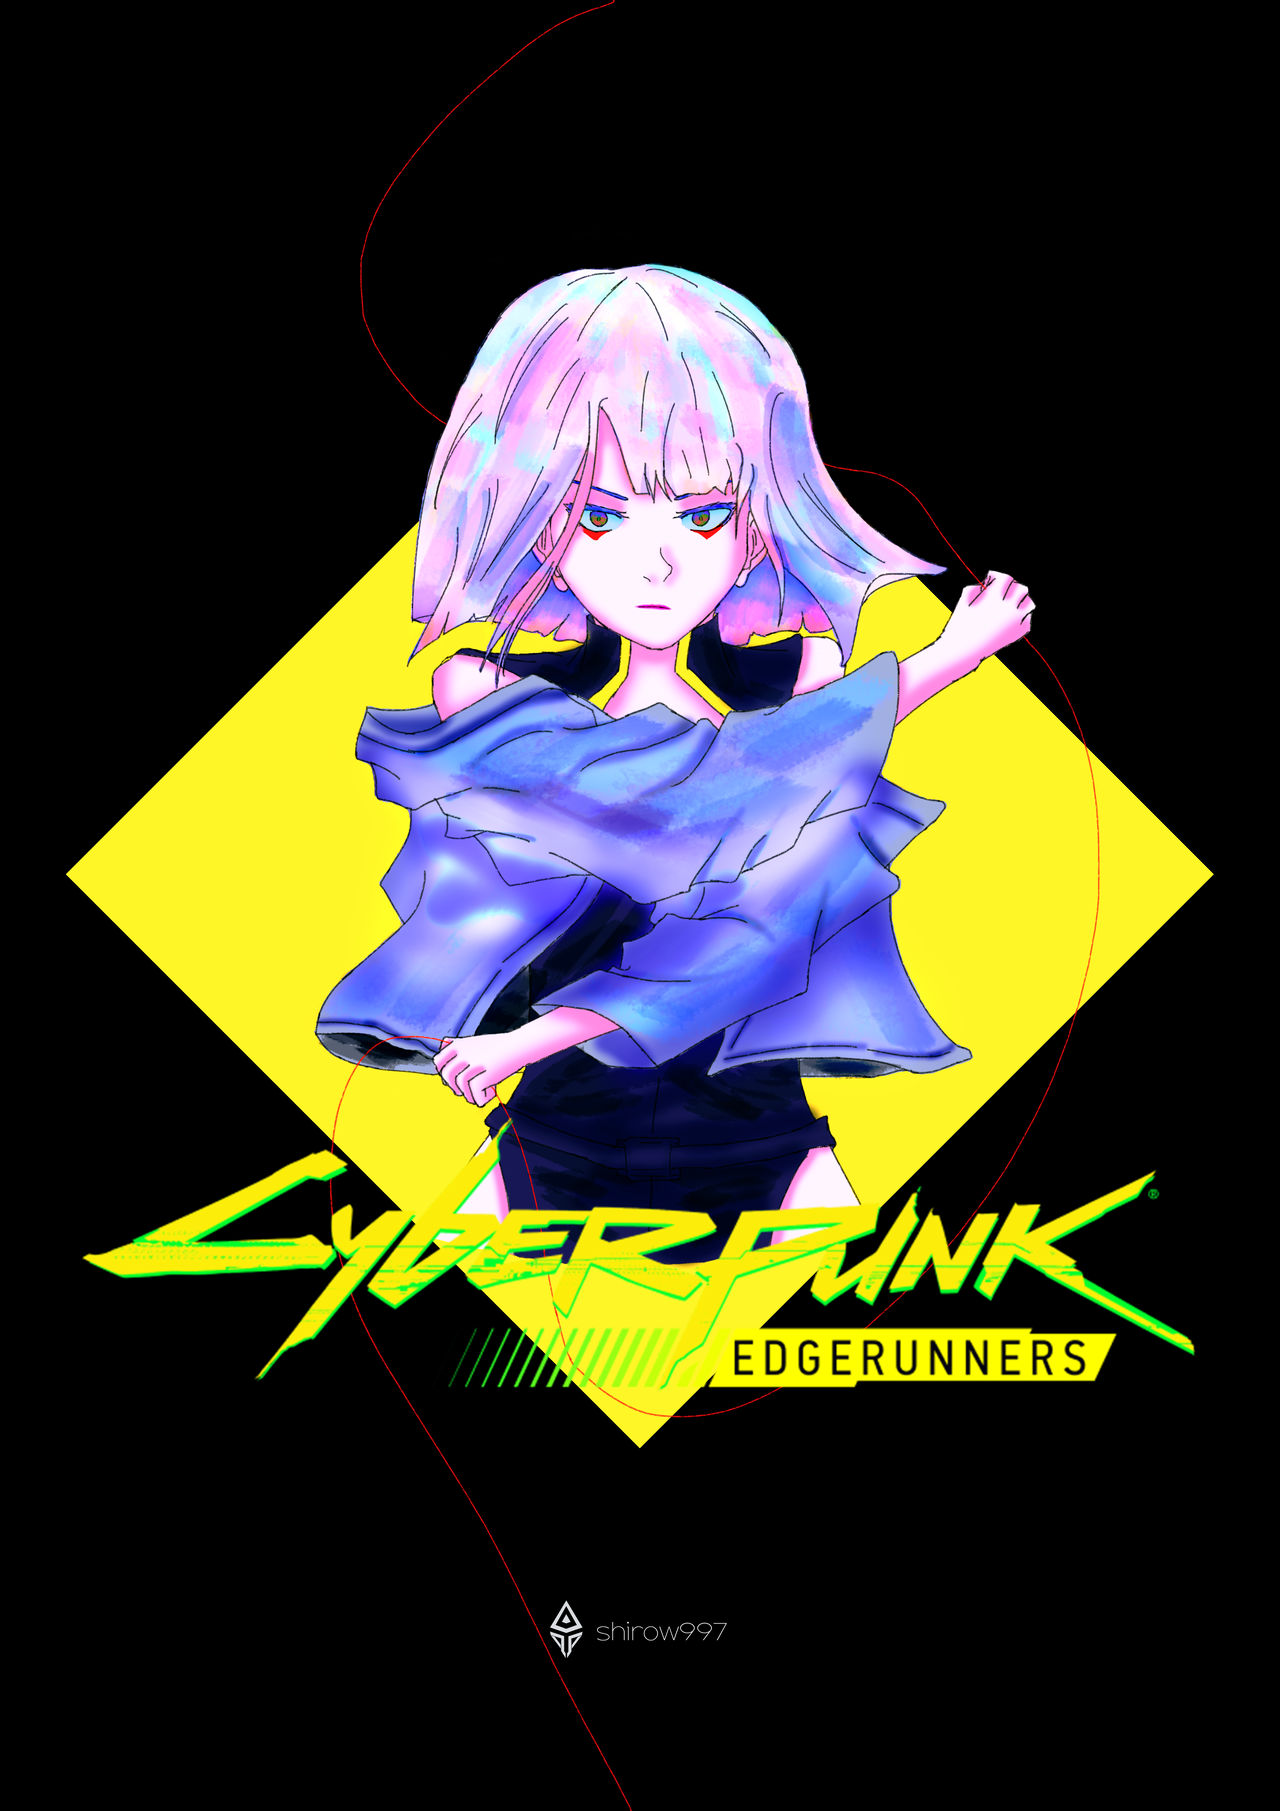 Cyberpunk Edgerunner - Lucy by shirow997 on DeviantArt